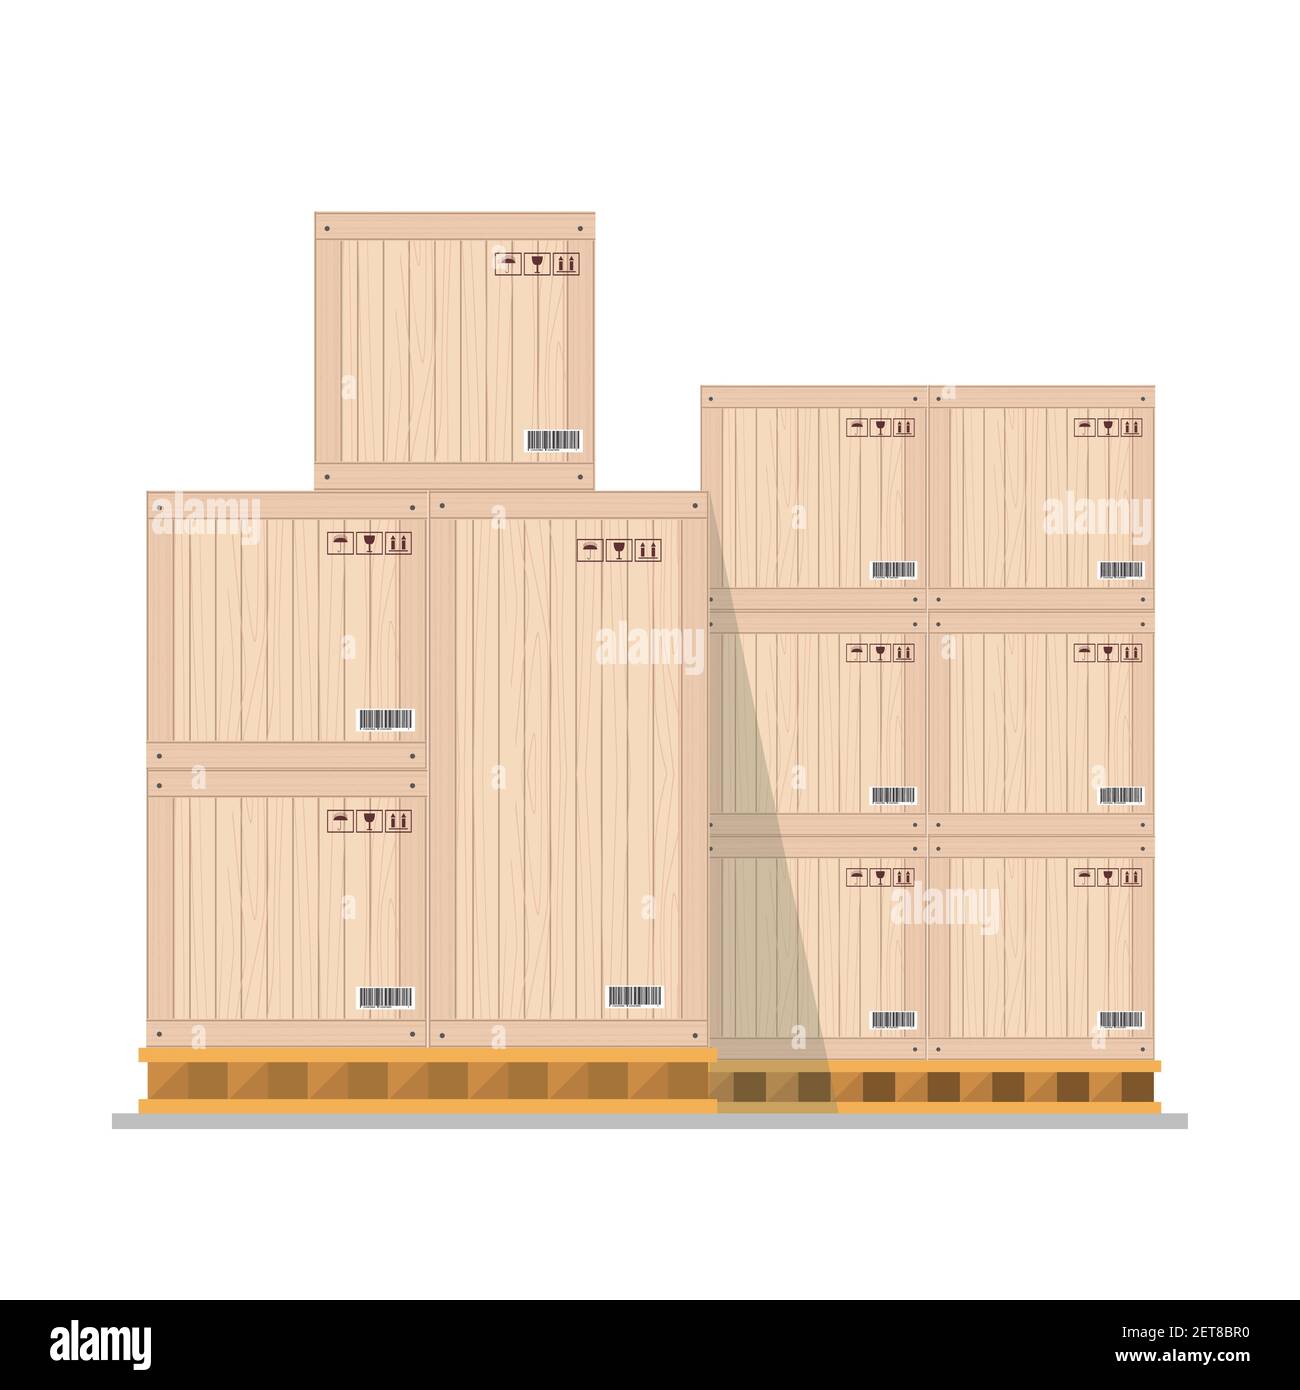 Caisses sur palette boisée, entrepôt boîtes en bois de paquet de la pile vue avant, isolé sur fond blanc, illustration vectorielle plate Illustration de Vecteur